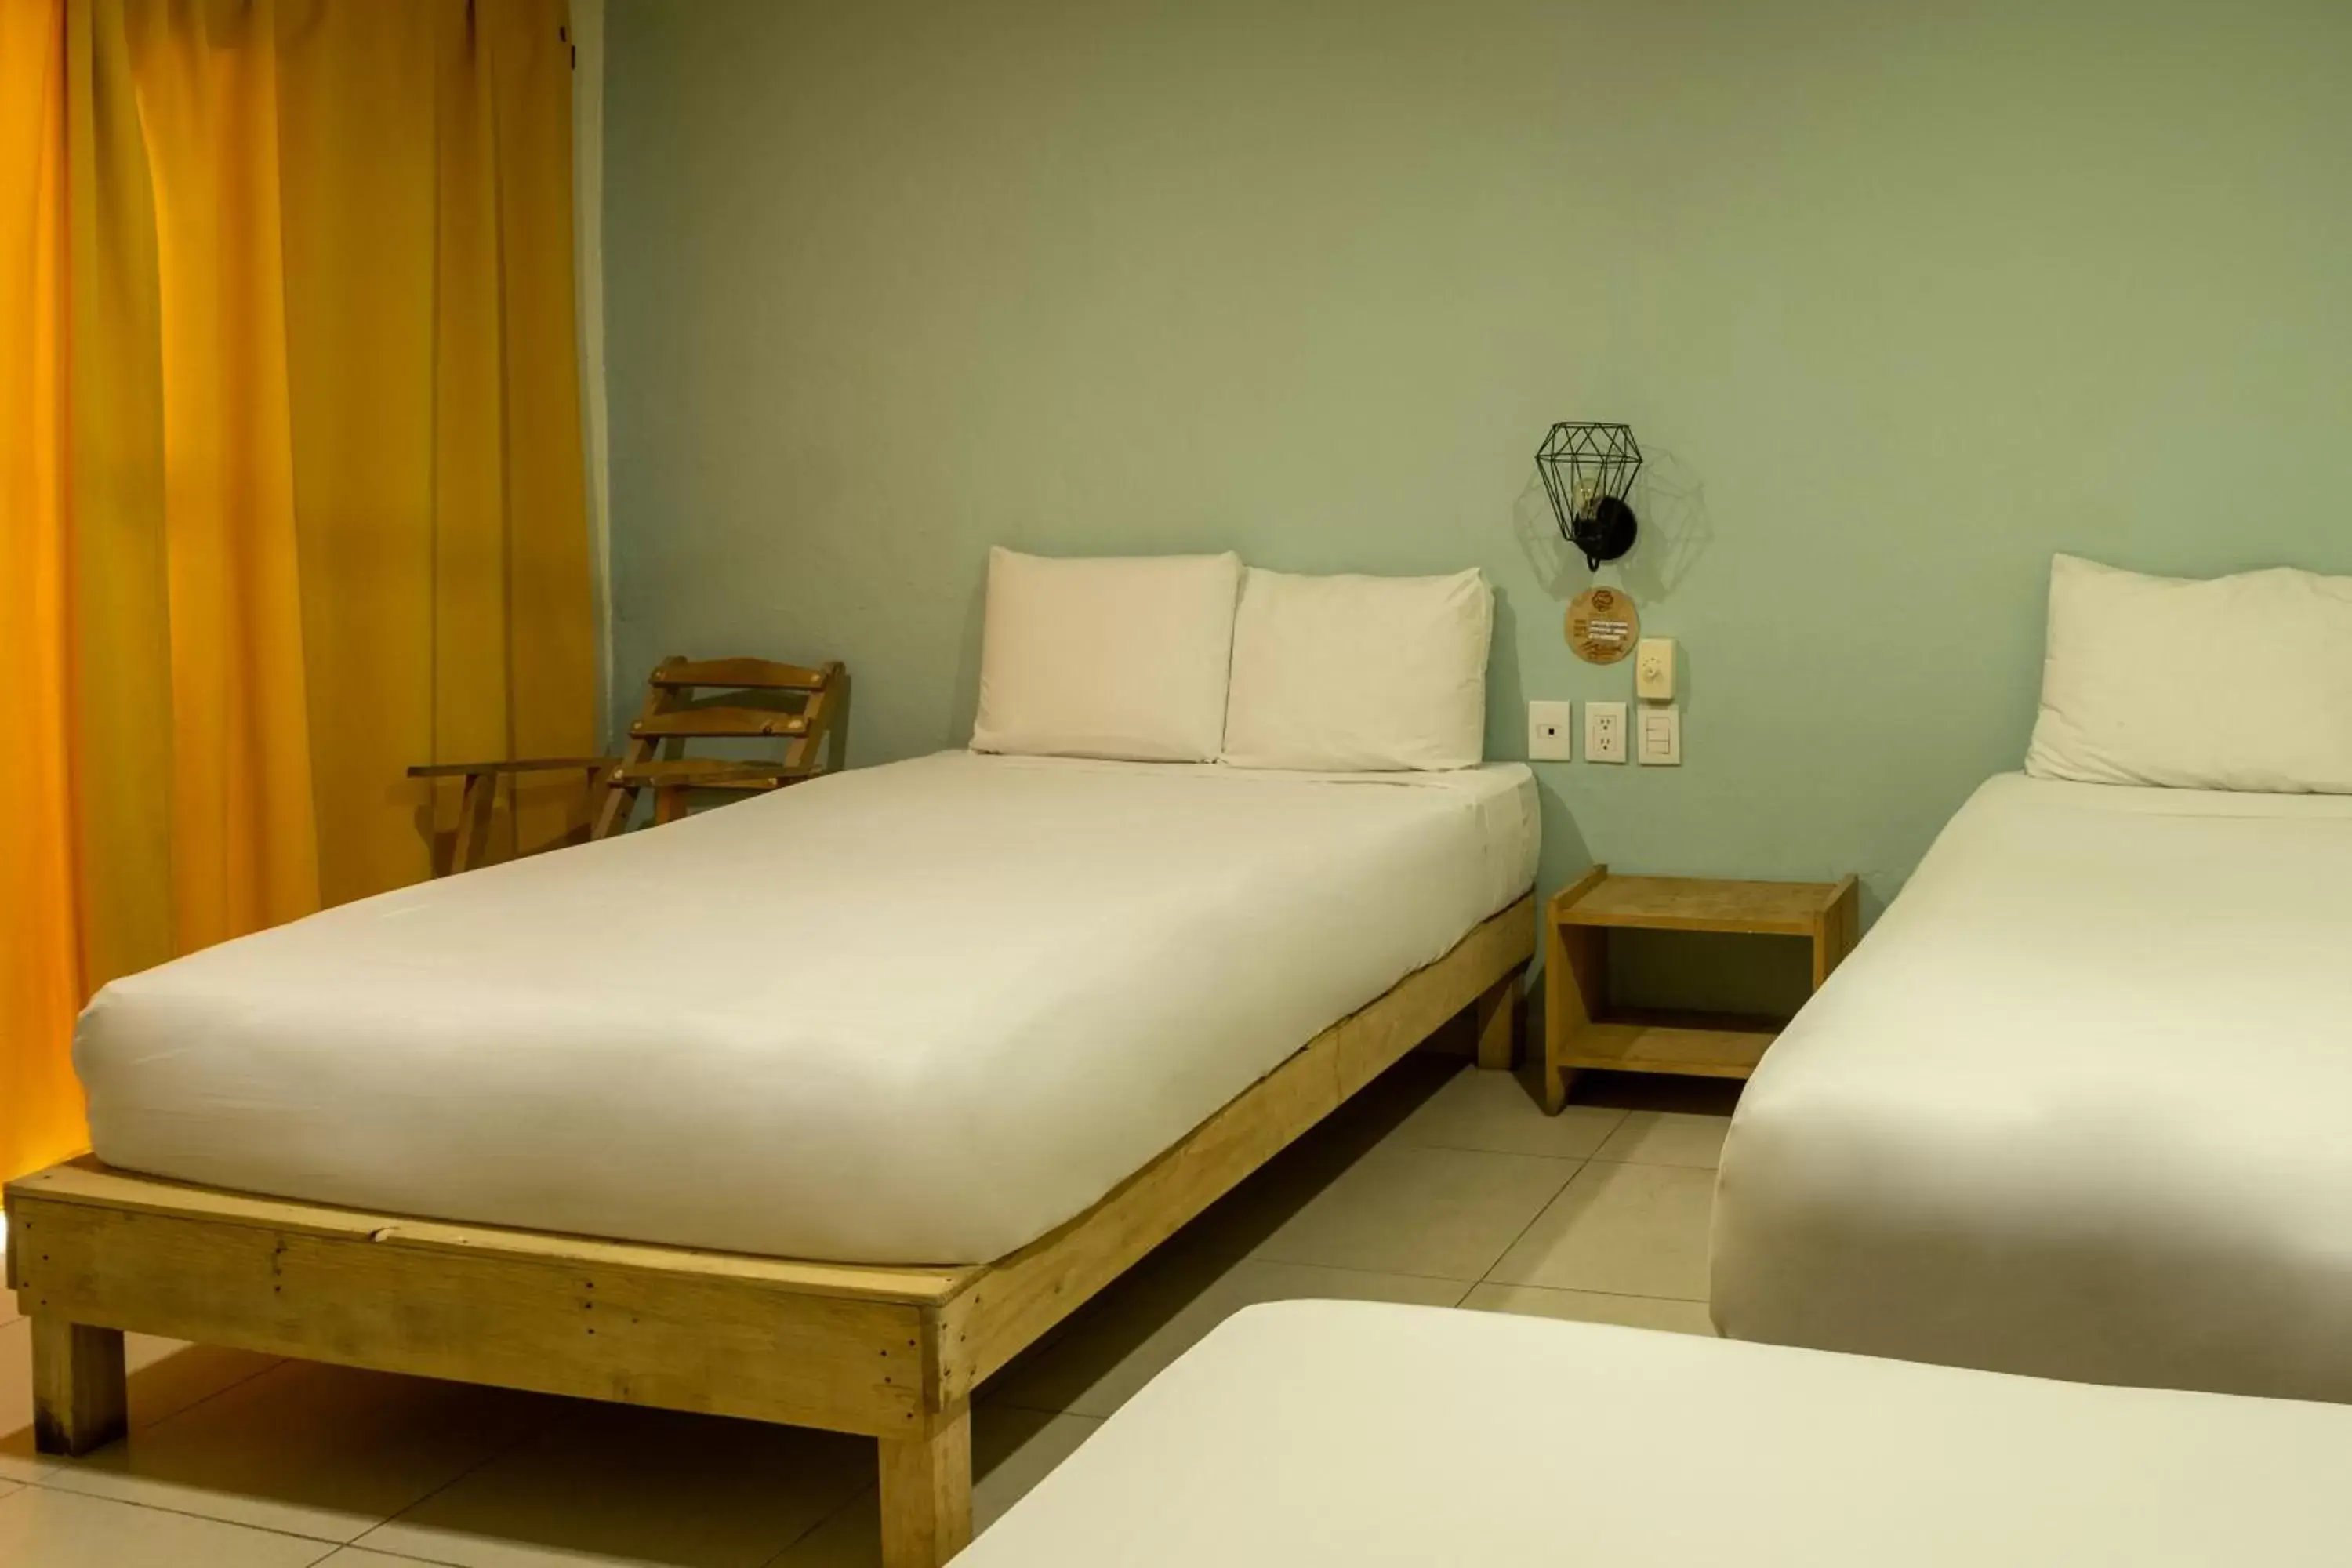 Bed in Hotel Paso del Mar